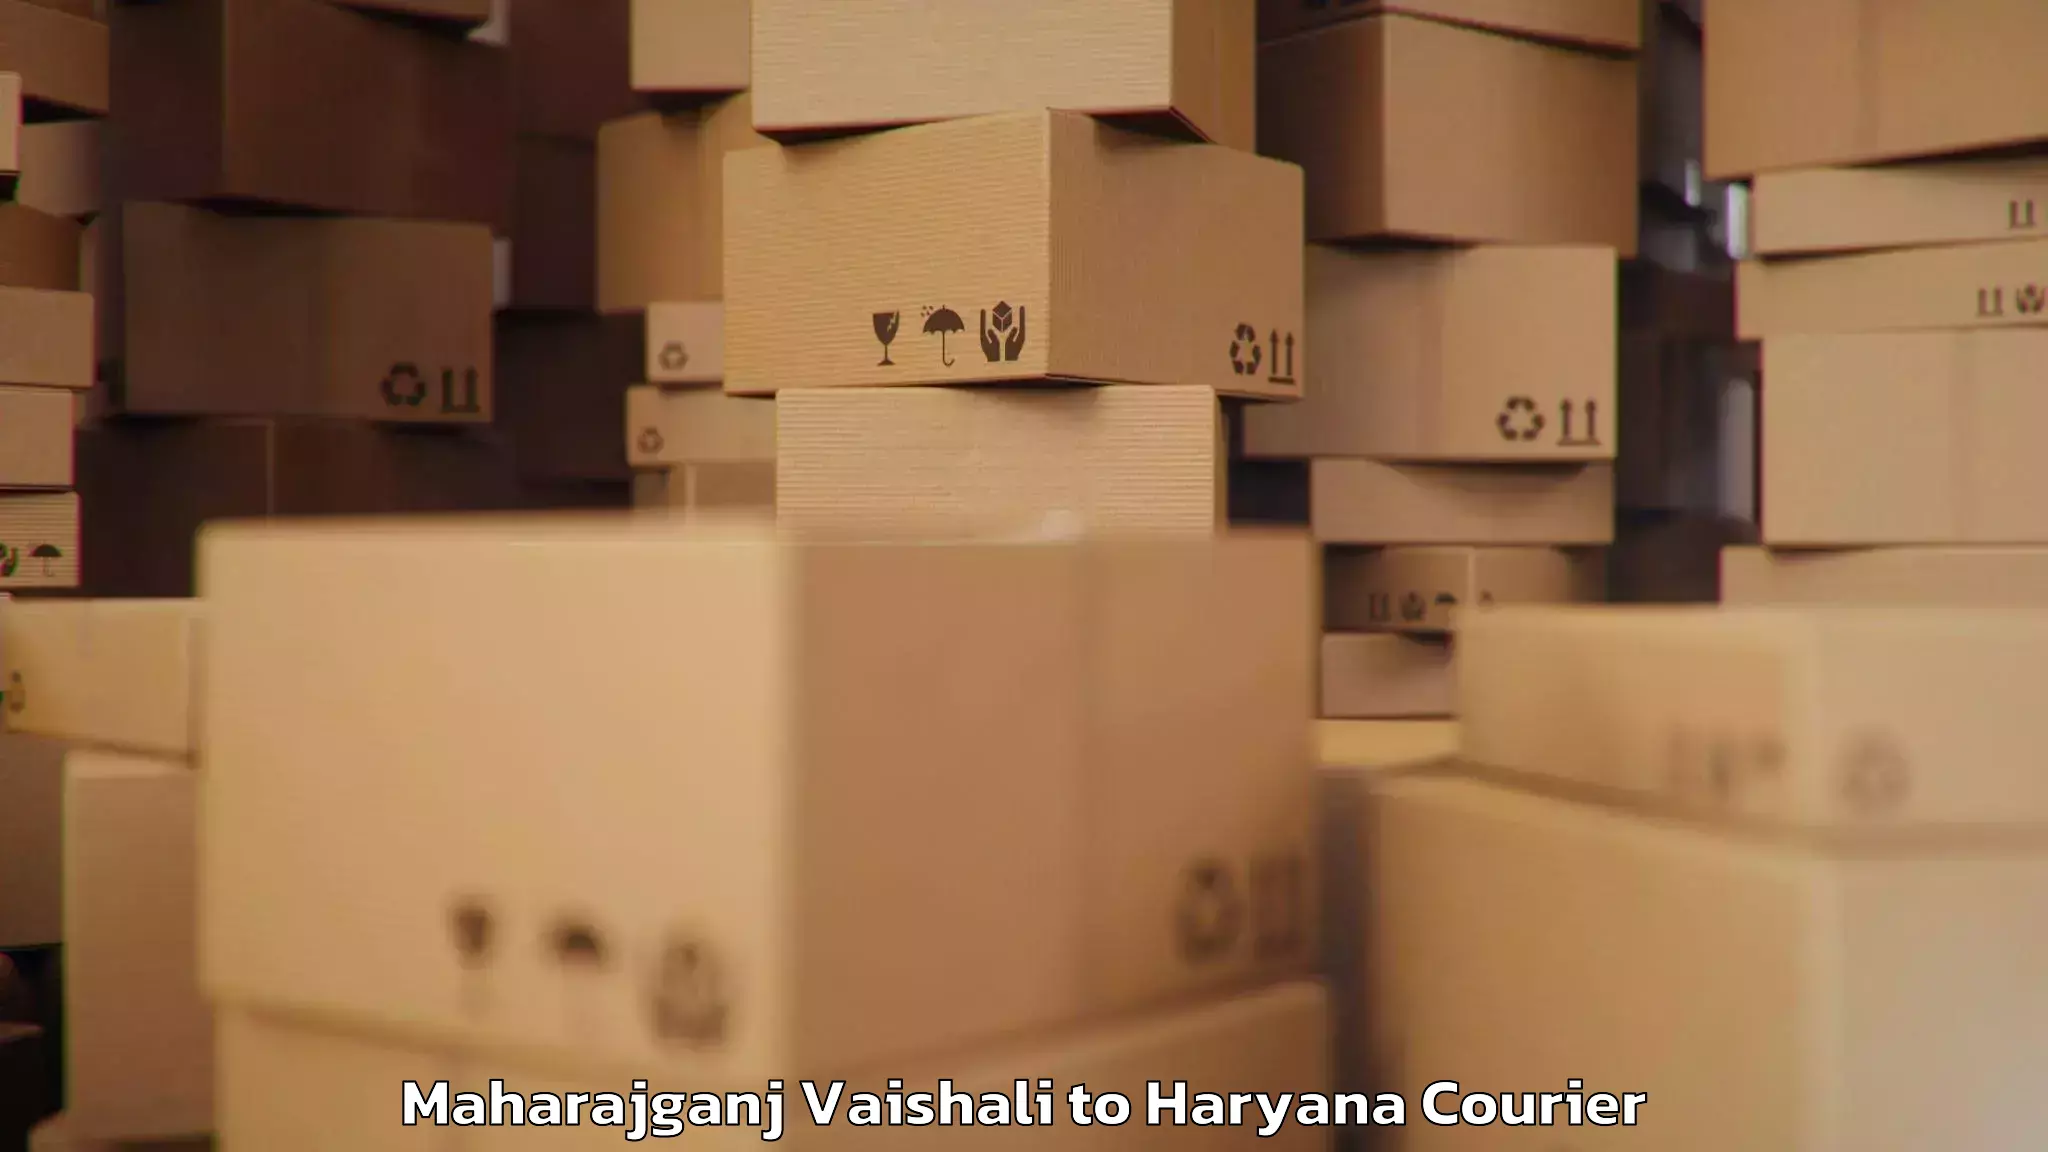 Professional baggage delivery Maharajganj Vaishali to Chaudhary Charan Singh Haryana Agricultural University Hisar